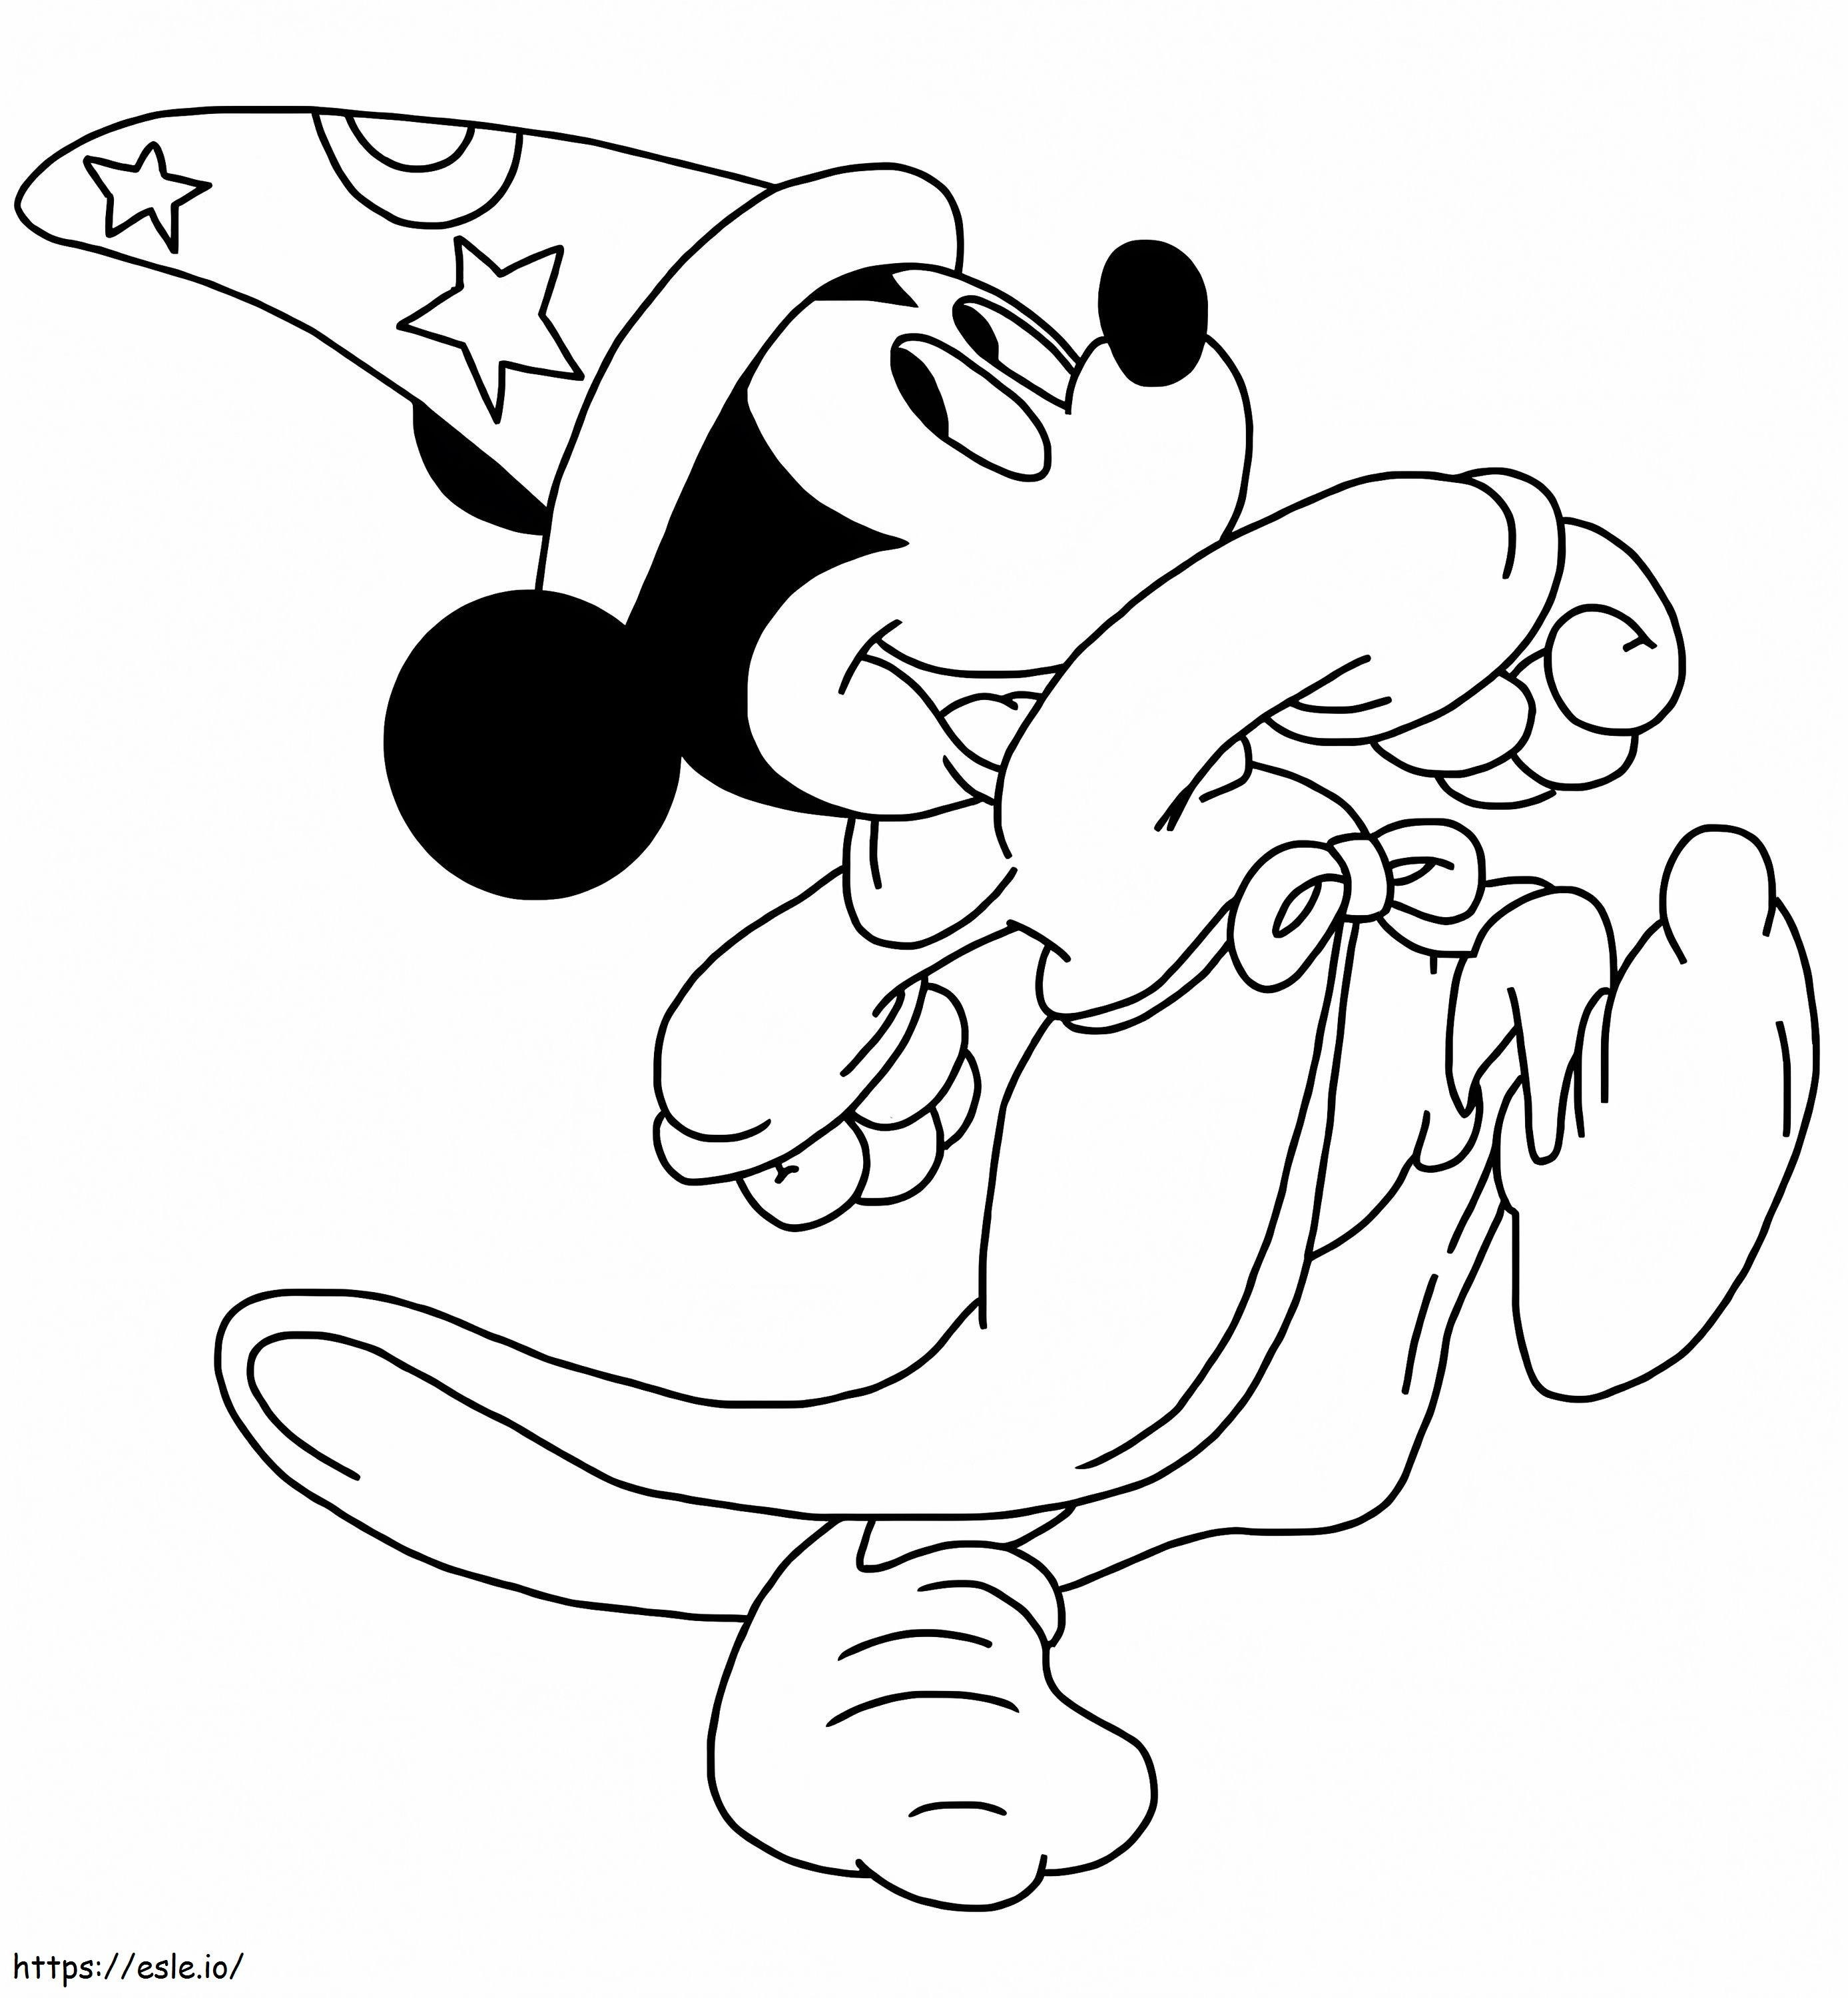 Hechicero de Mickey Mouse para colorear